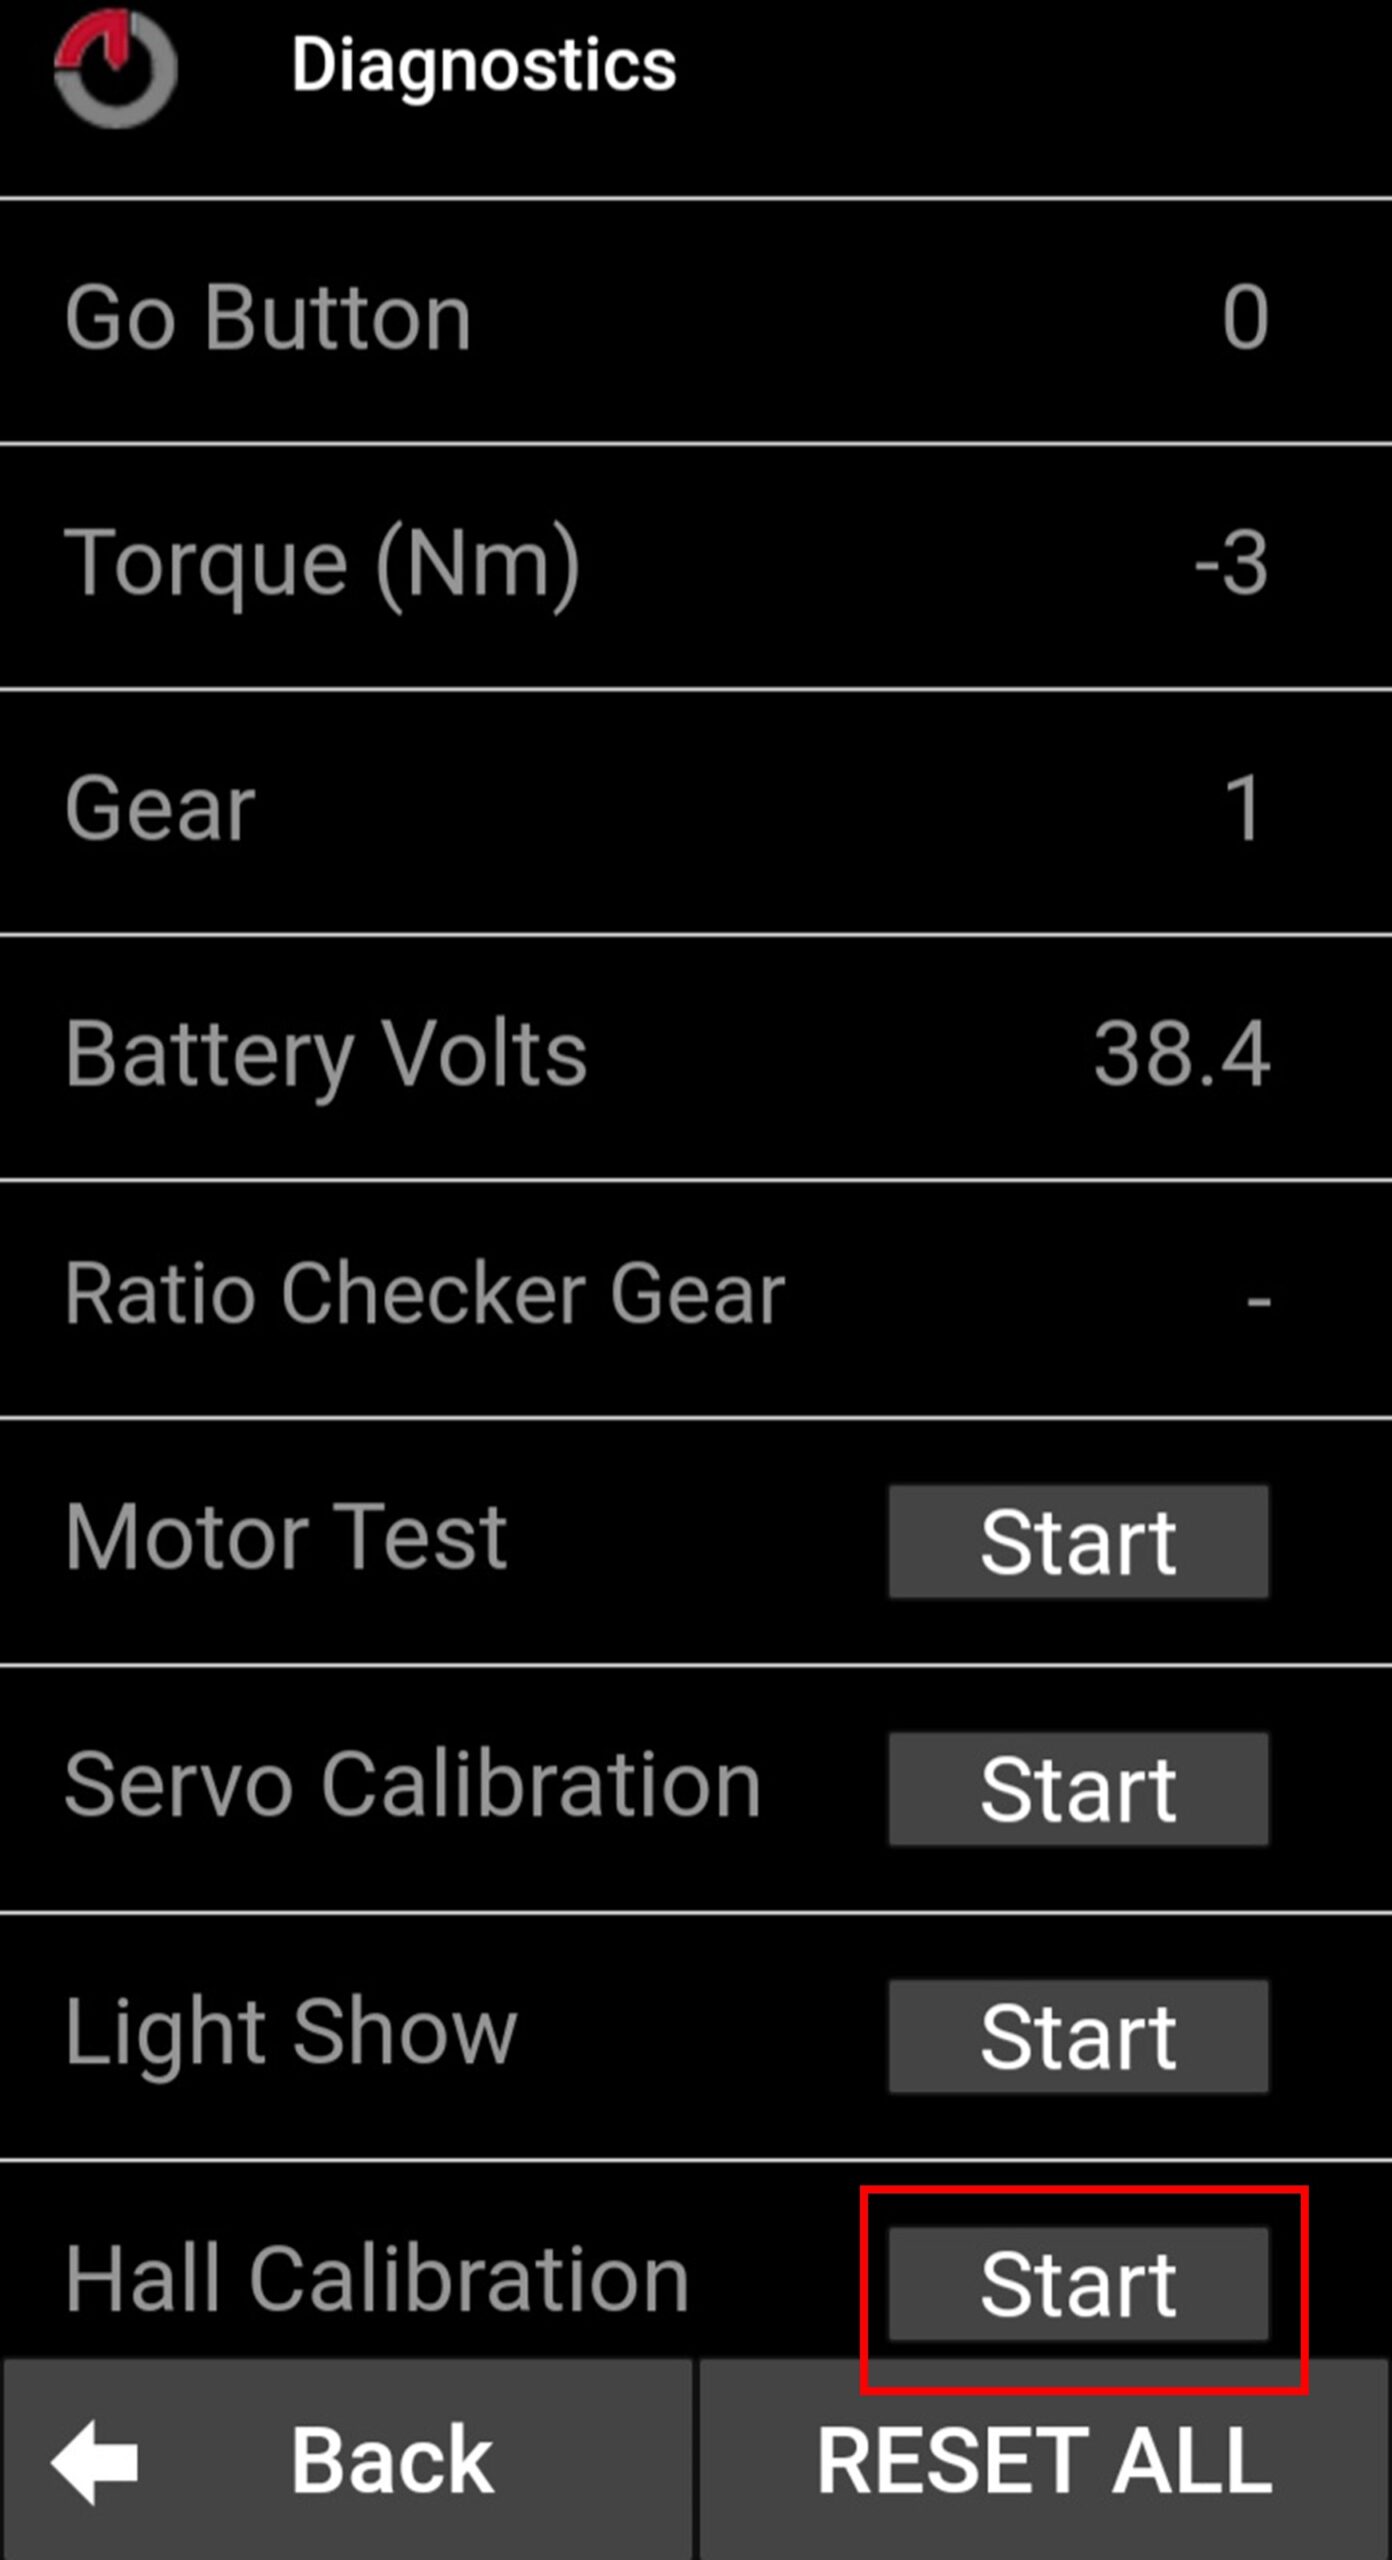 Captura de pantalla de la aplicación móvil de Gocycle tipo tutorial  para explicar cómo se calibra el sensor Hall en los modelos G4, G4i y G4i+